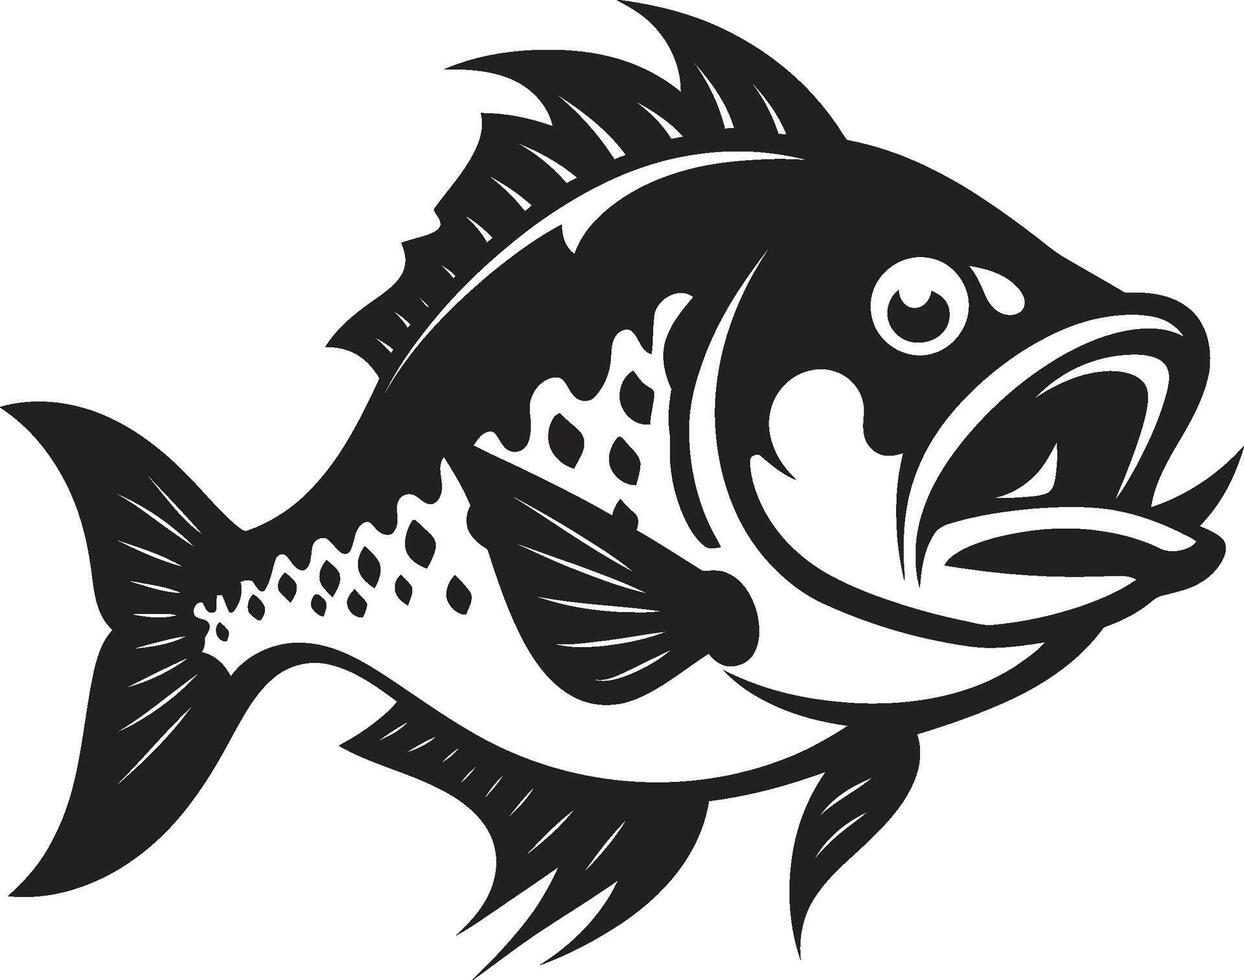 Jaws of Danger Elegant Black Logo Design with Sleek Piranha Menacing Predator Icon Chic Emblem for a Striking Image vector